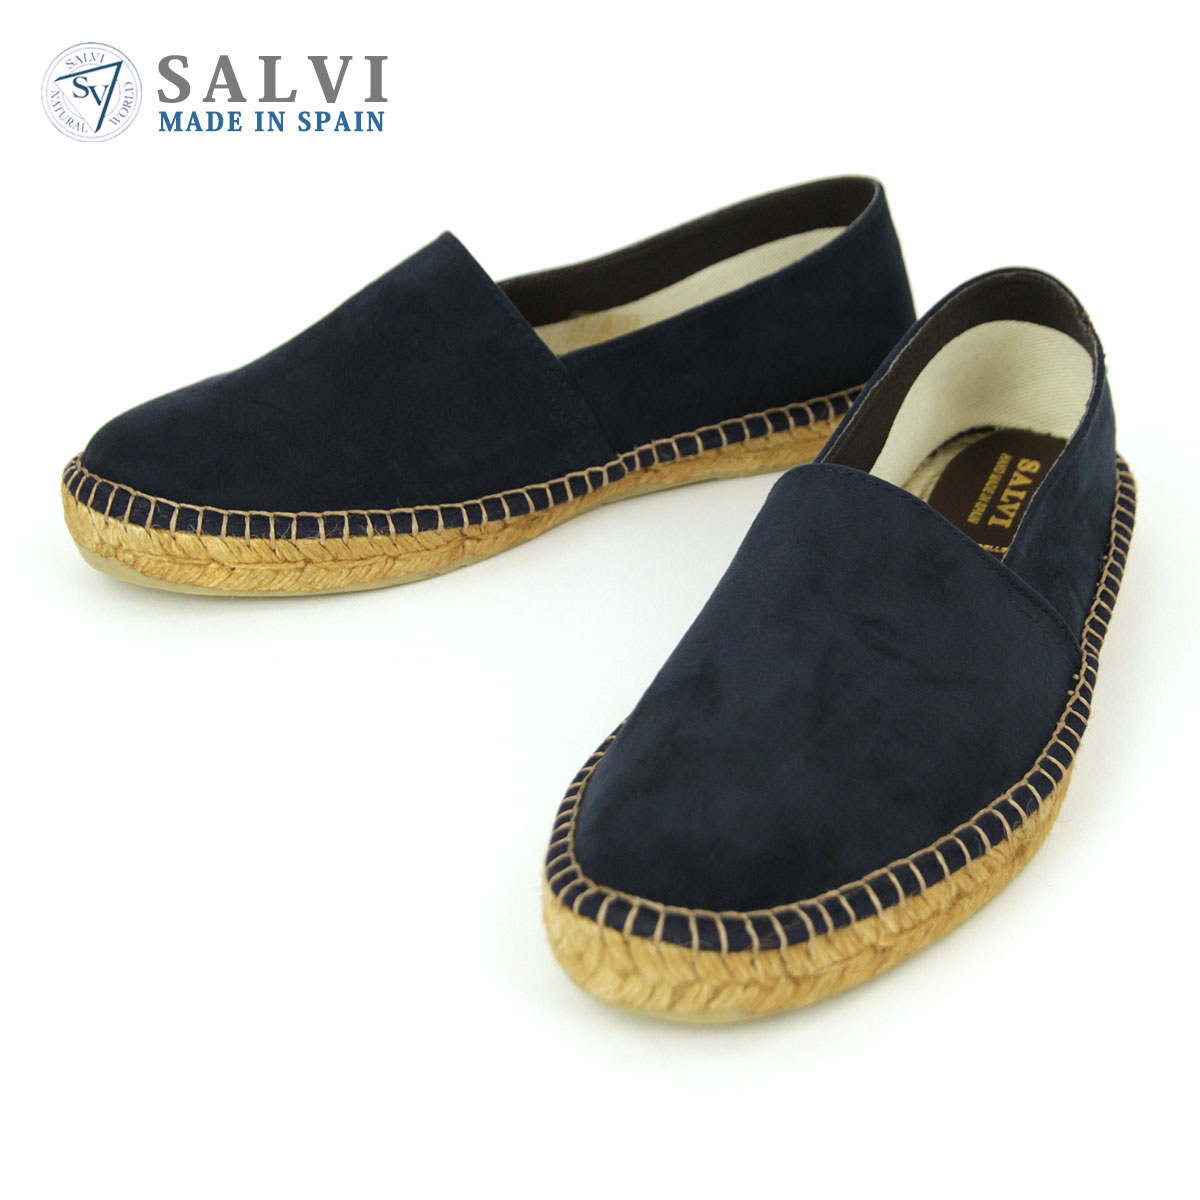 サルヴィ SALVI 正規販売店 エスパドリーユ シューズ 靴 ESPADRILLE SUEDE PP SHOES エスパドリーユ スエードシューズ 44-152 MEDIANOCHE（MARINO）